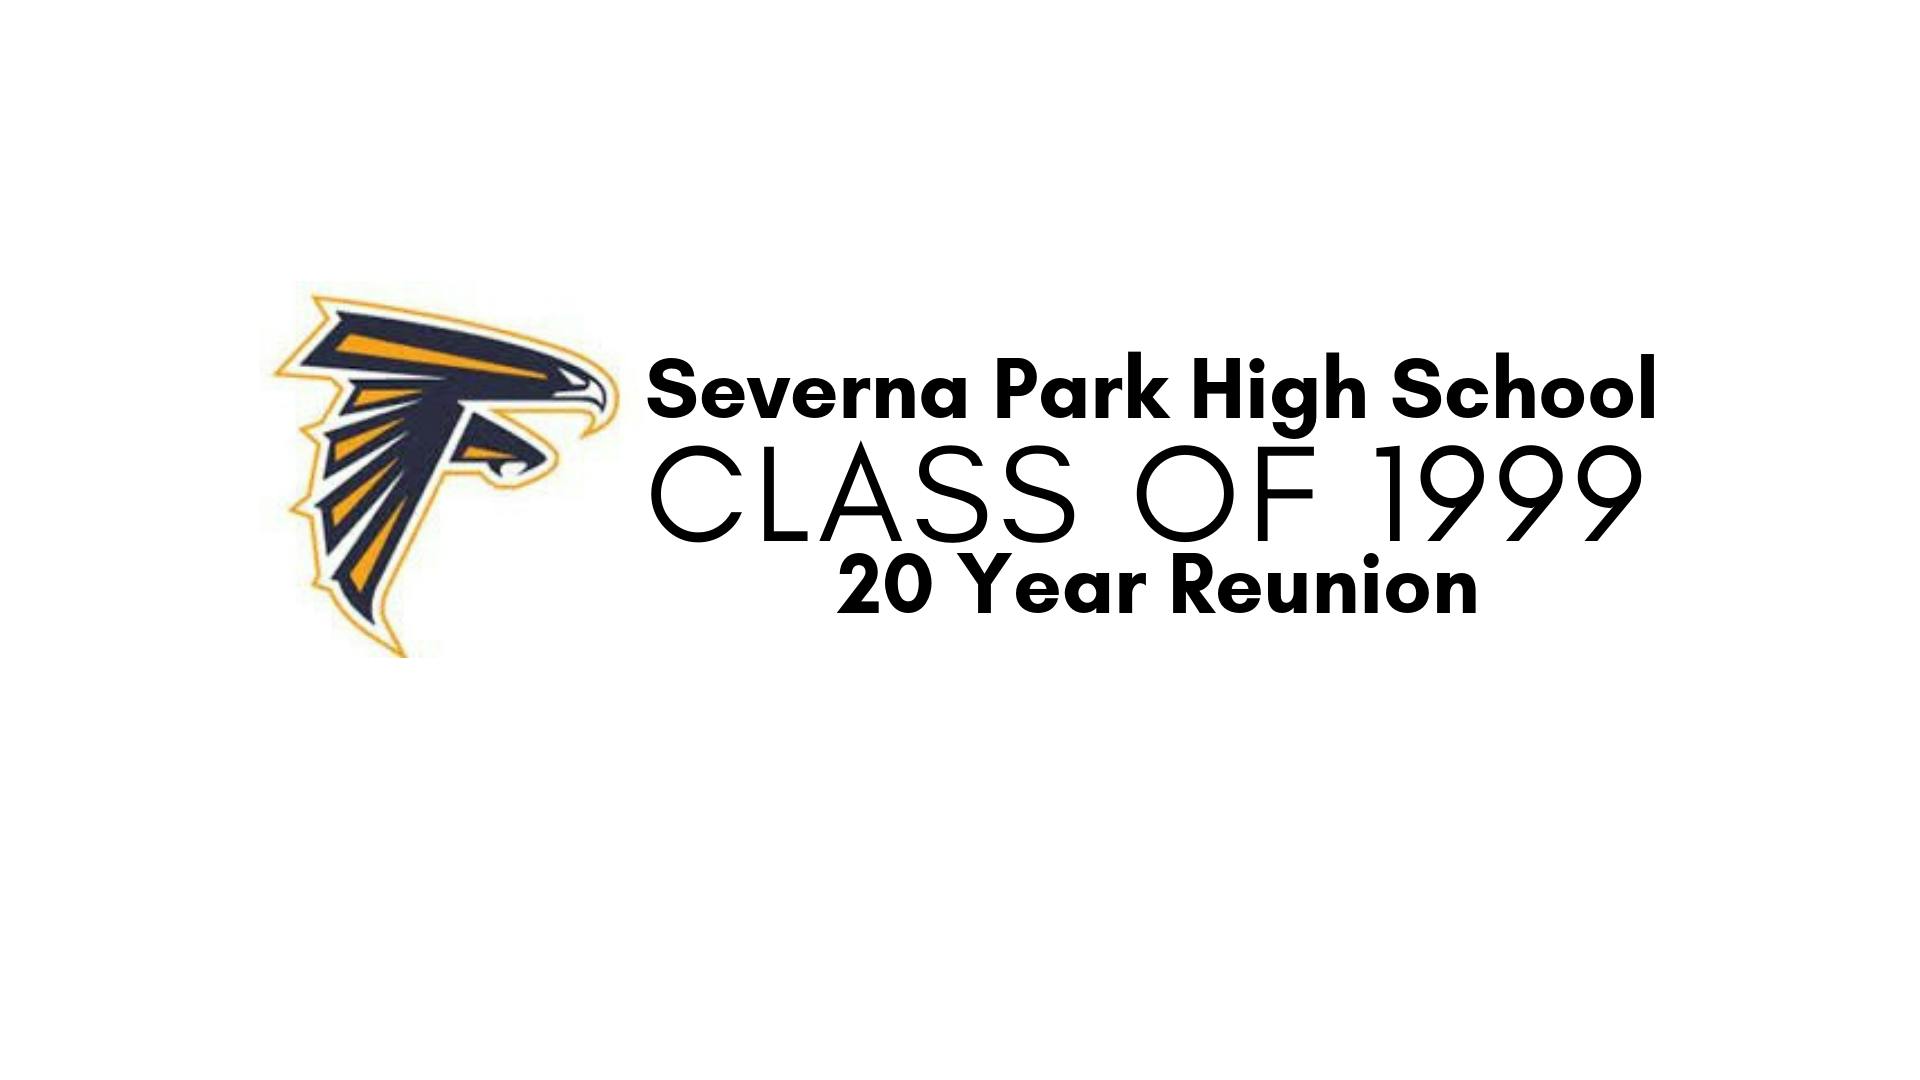 Severna Park High School - Class of 1999 - 20 Year Reunion